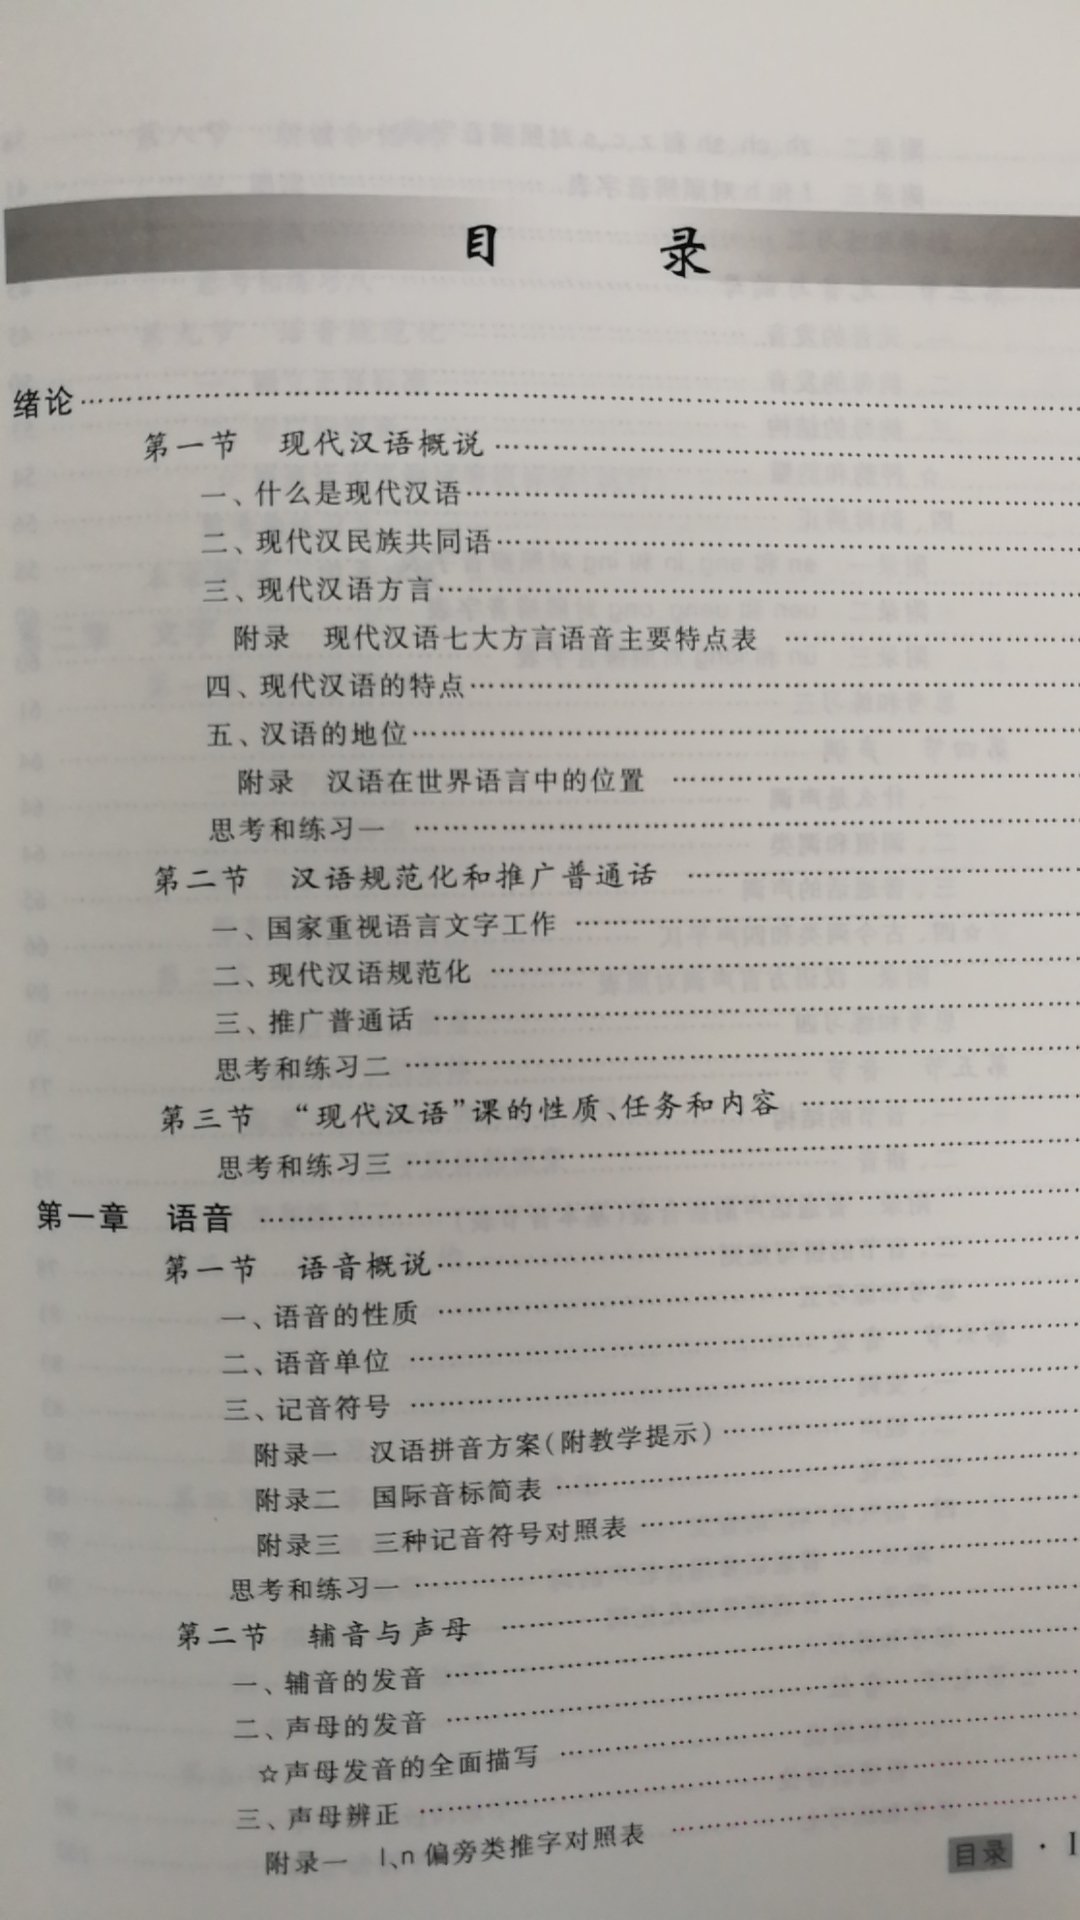 很久以前我们的现代汉语教科书就是这版的前身的前身的前身，现在的增订六版学习怀旧一举两得。